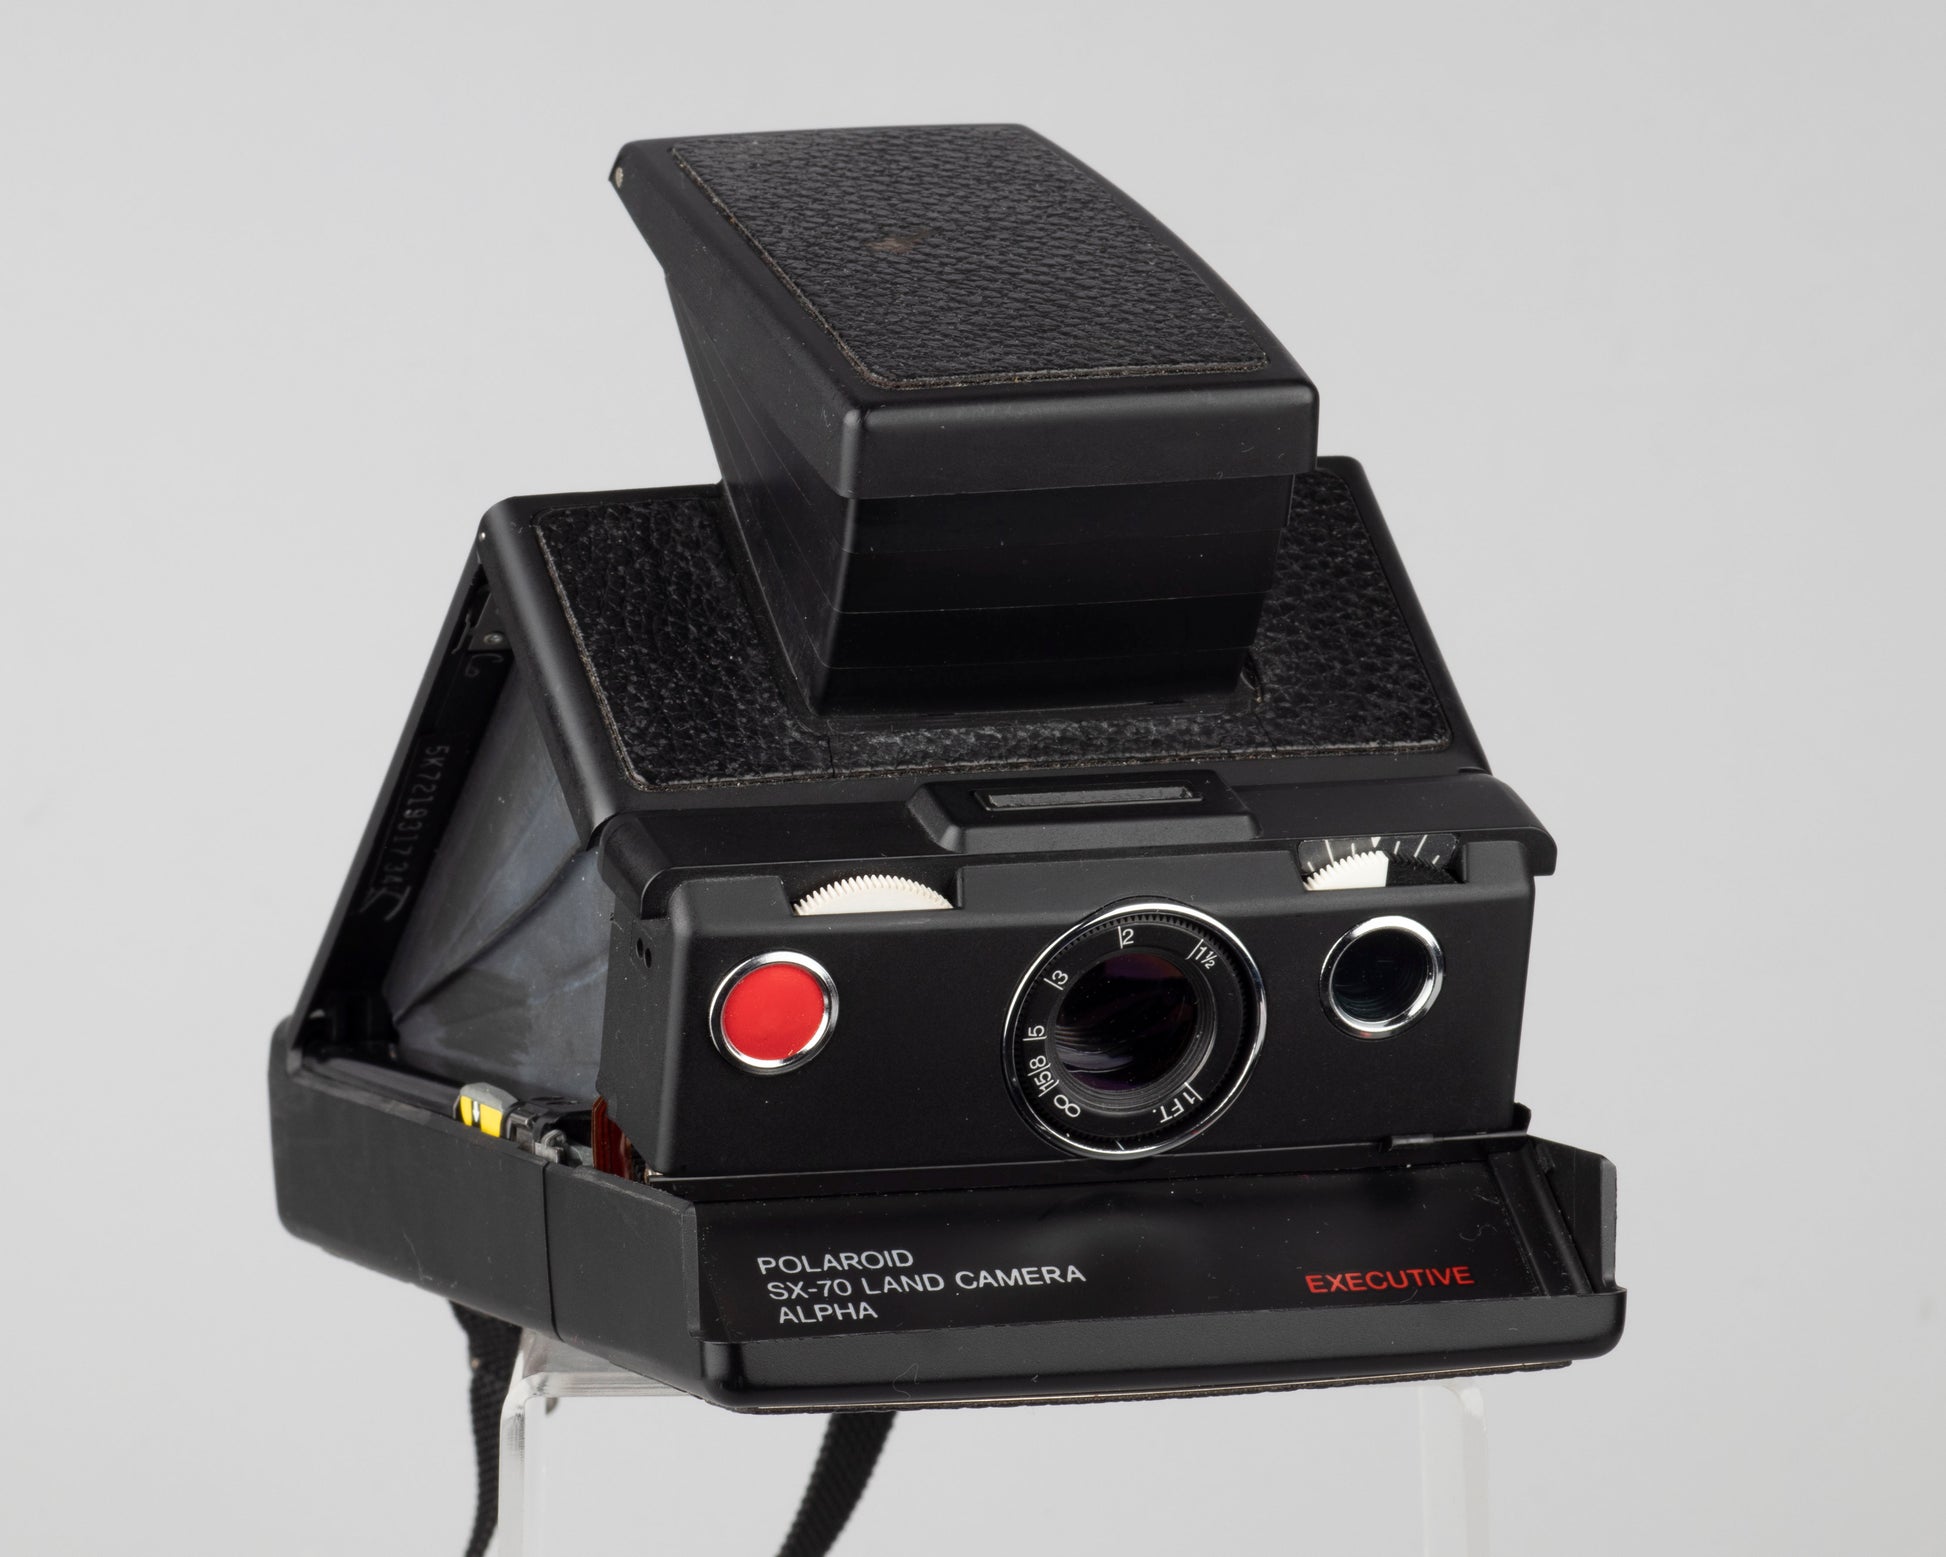 Polaroid SX-70 Alpha Executive